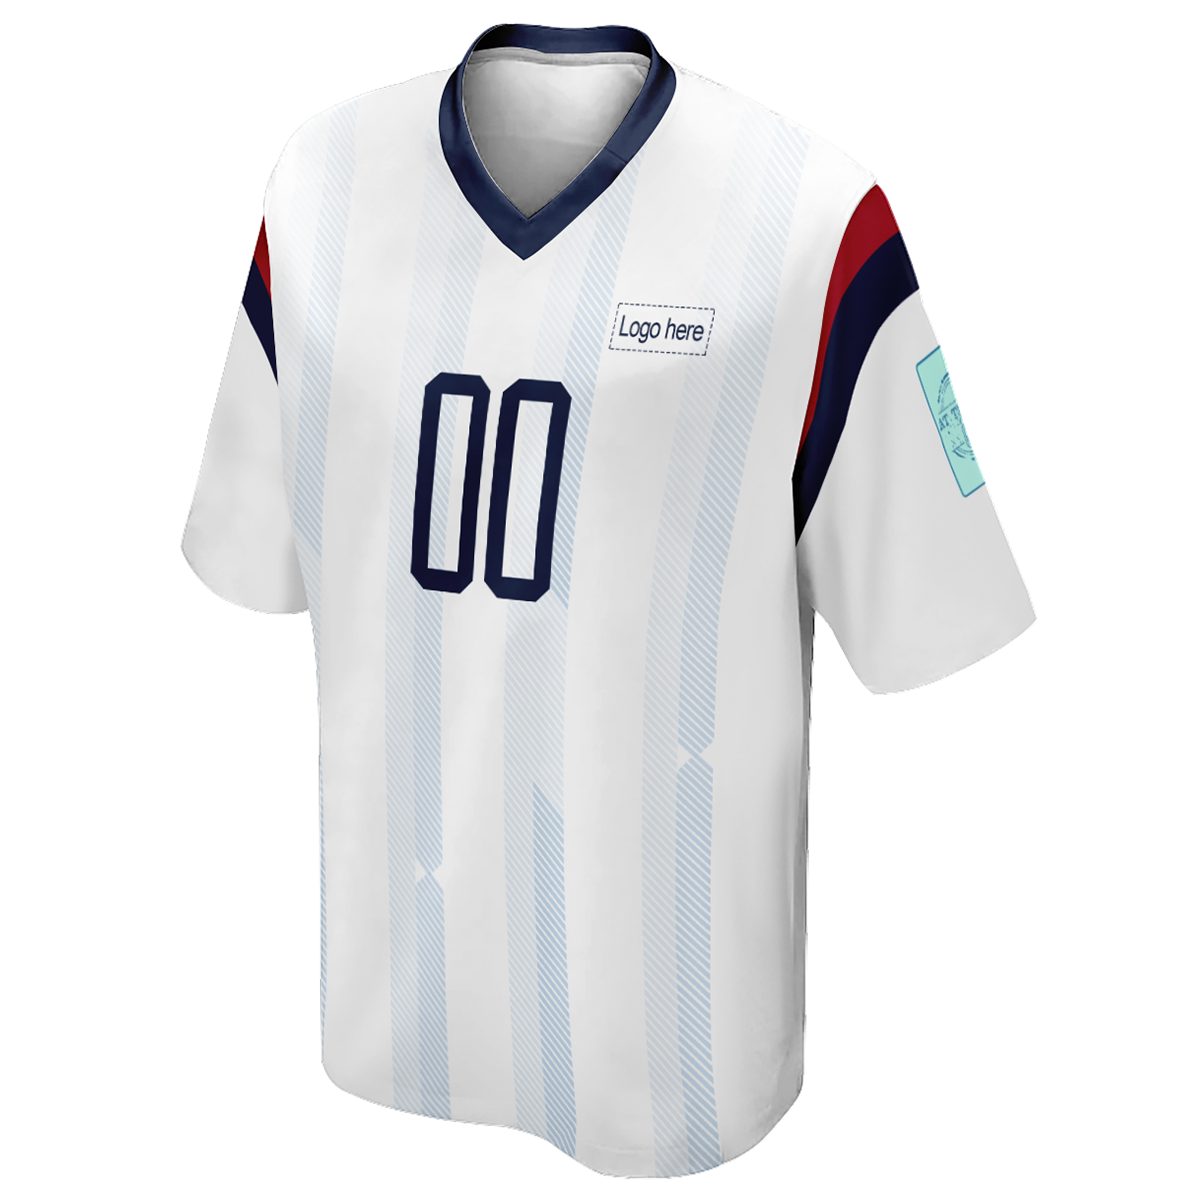 로고가 있는 남성 맞춤형 한국 월드컵 축구 유니폼